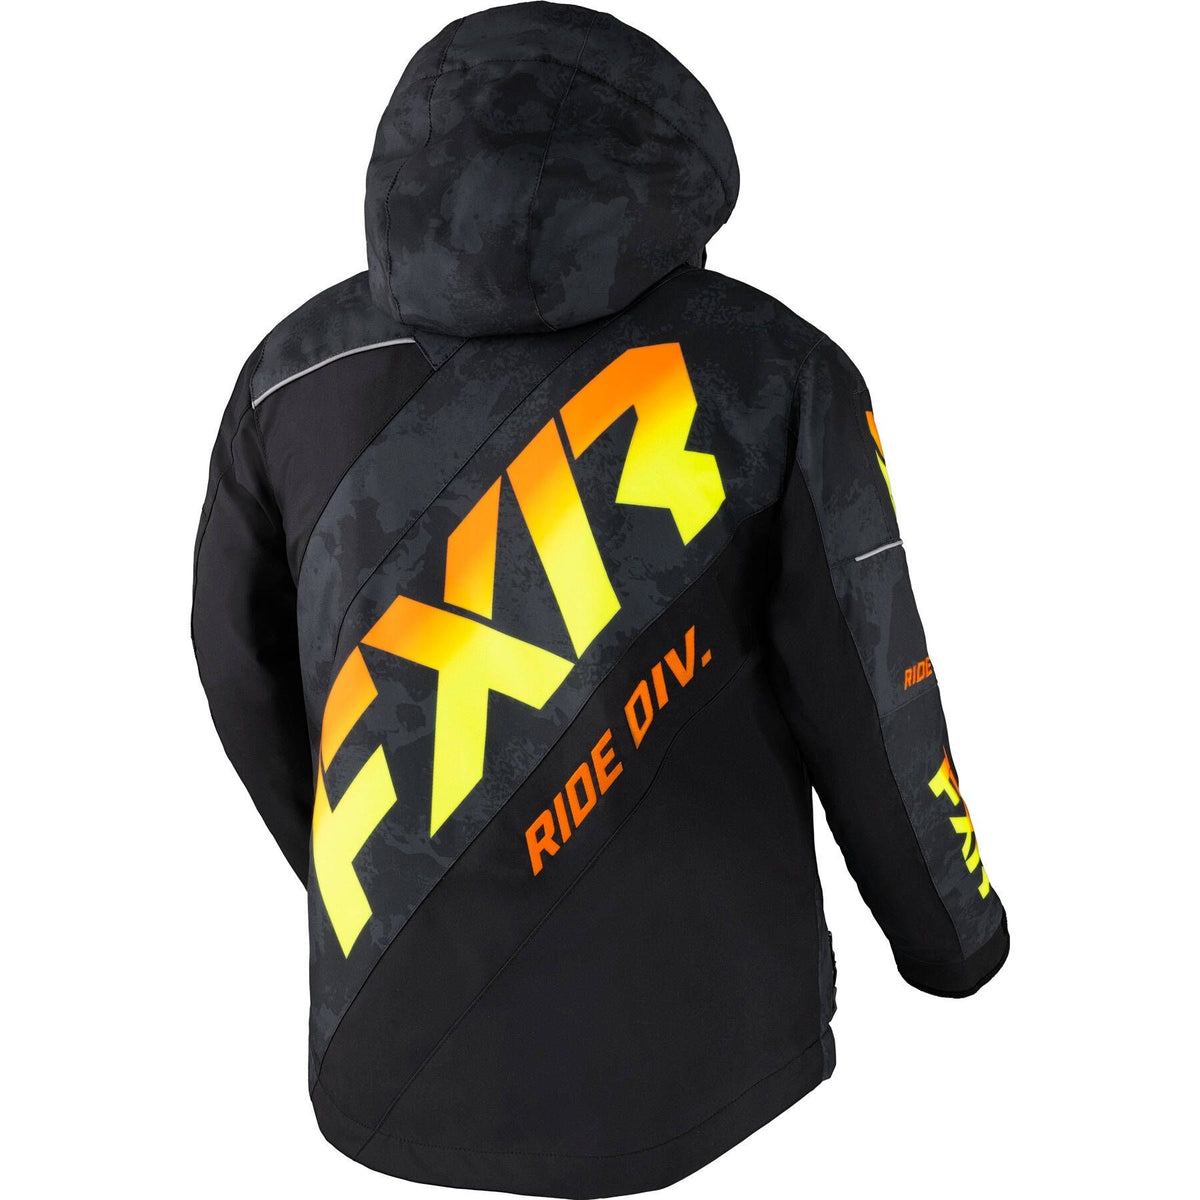 FXR Child CX Jacket